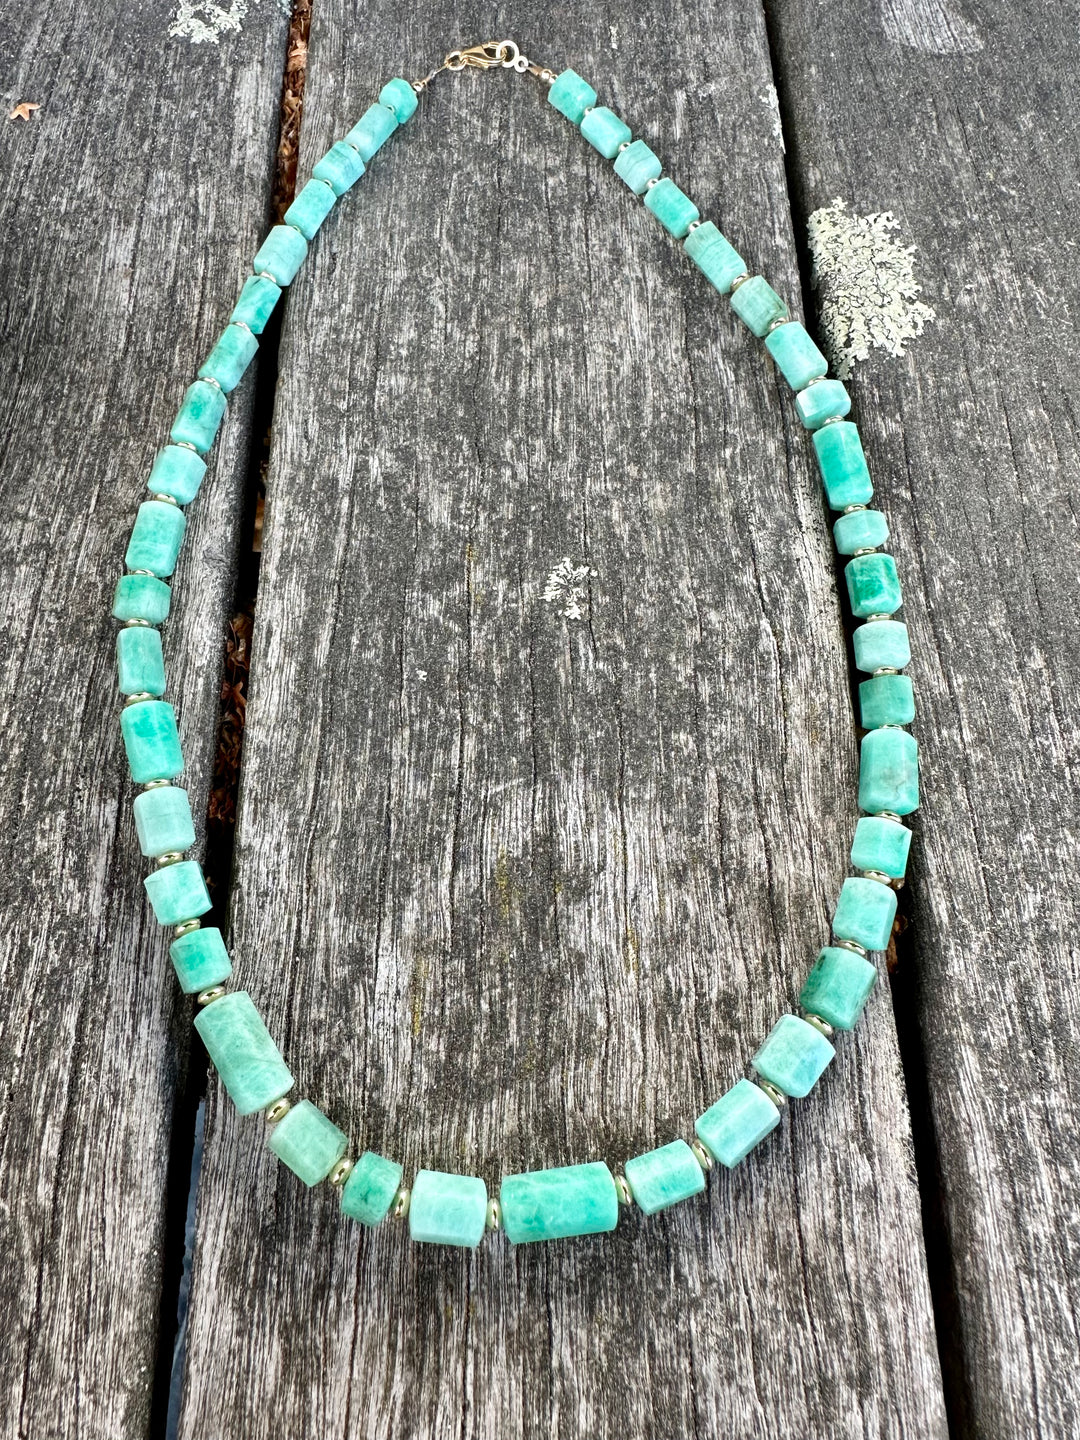 Brazilian emerald necklace